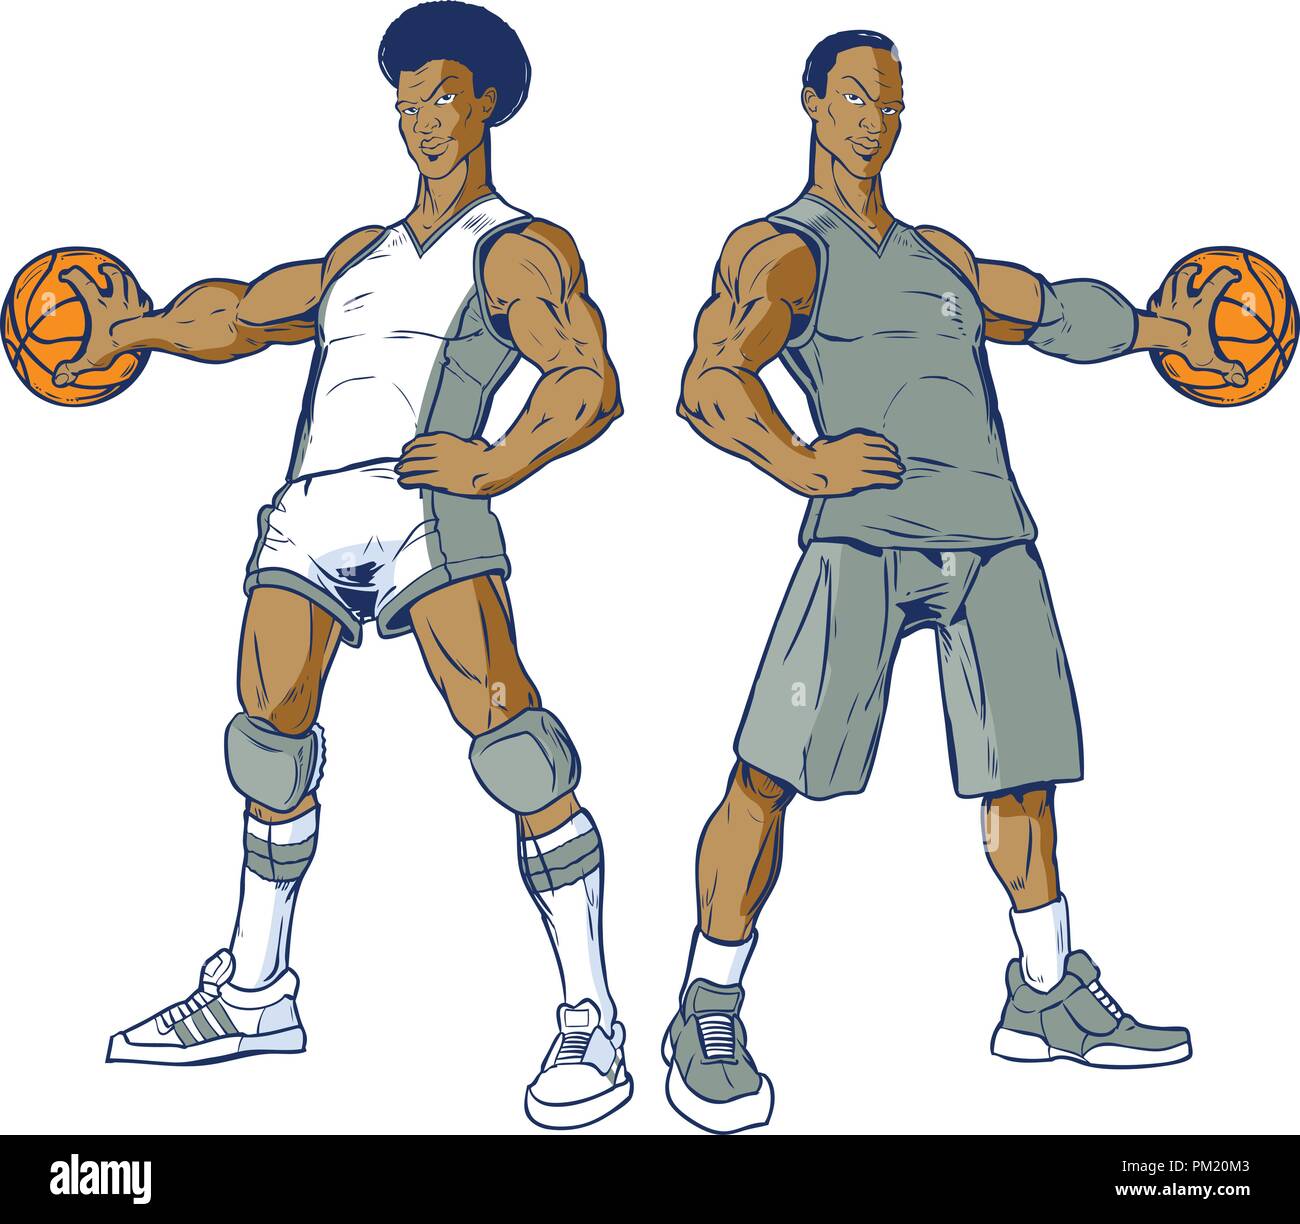 Vektor cartoon Clipart Abbildung: Ein Satz von zwei afrikanische amerikanische Basketballspieler, ein modernes, ein retro aus den 70â € ™ s, palming die Kugel. Uni Stock Vektor